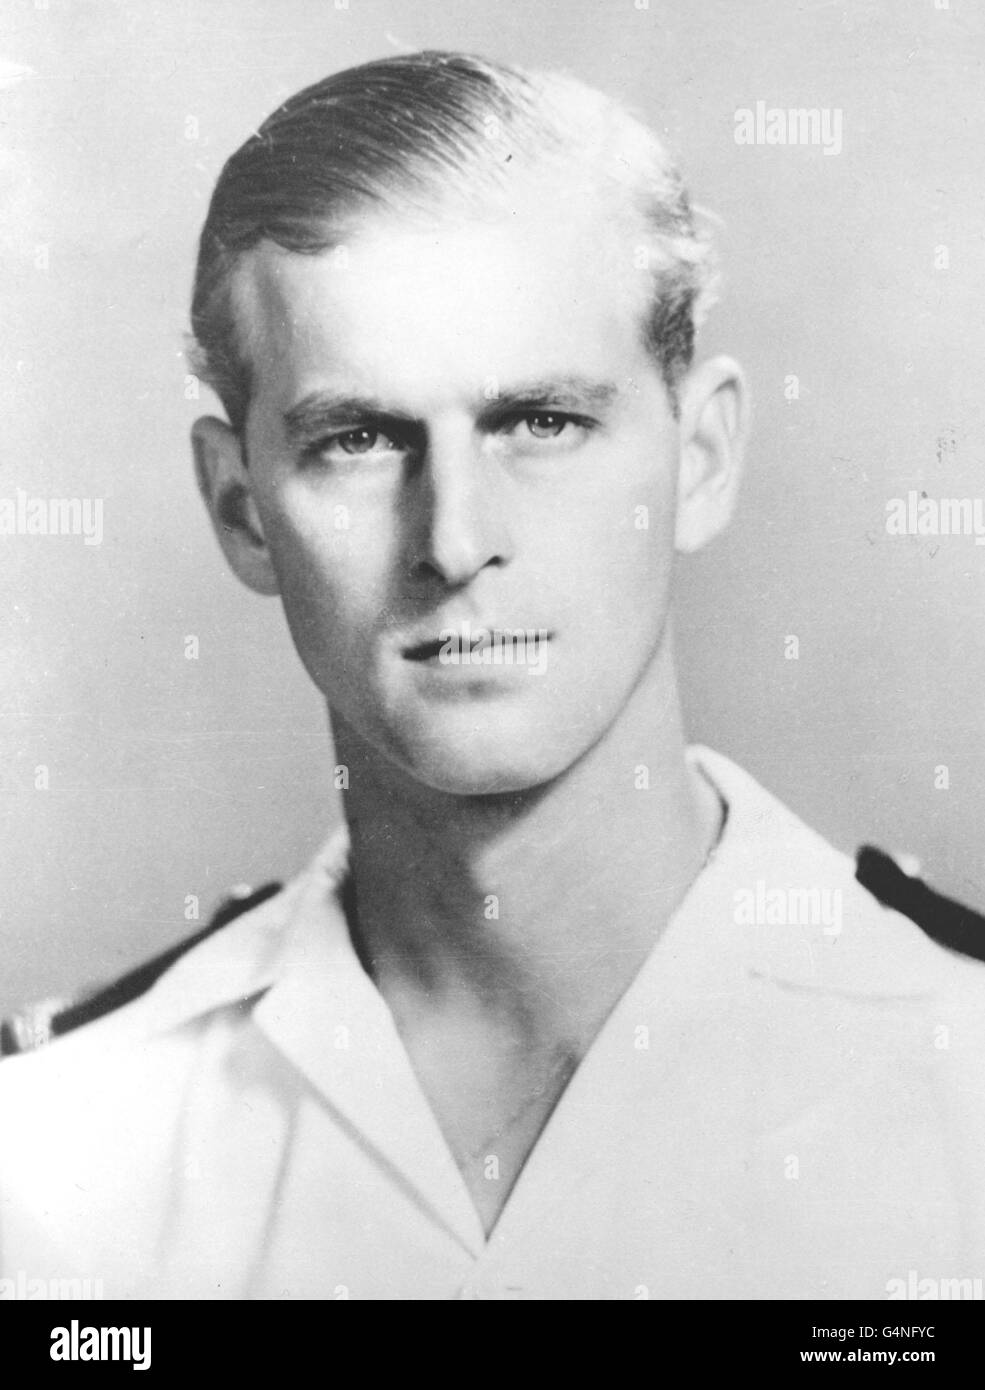 Der Herzog von Edinburgh als Kommandant der Frigate HMS Magpie im Jahr 1951. Stockfoto